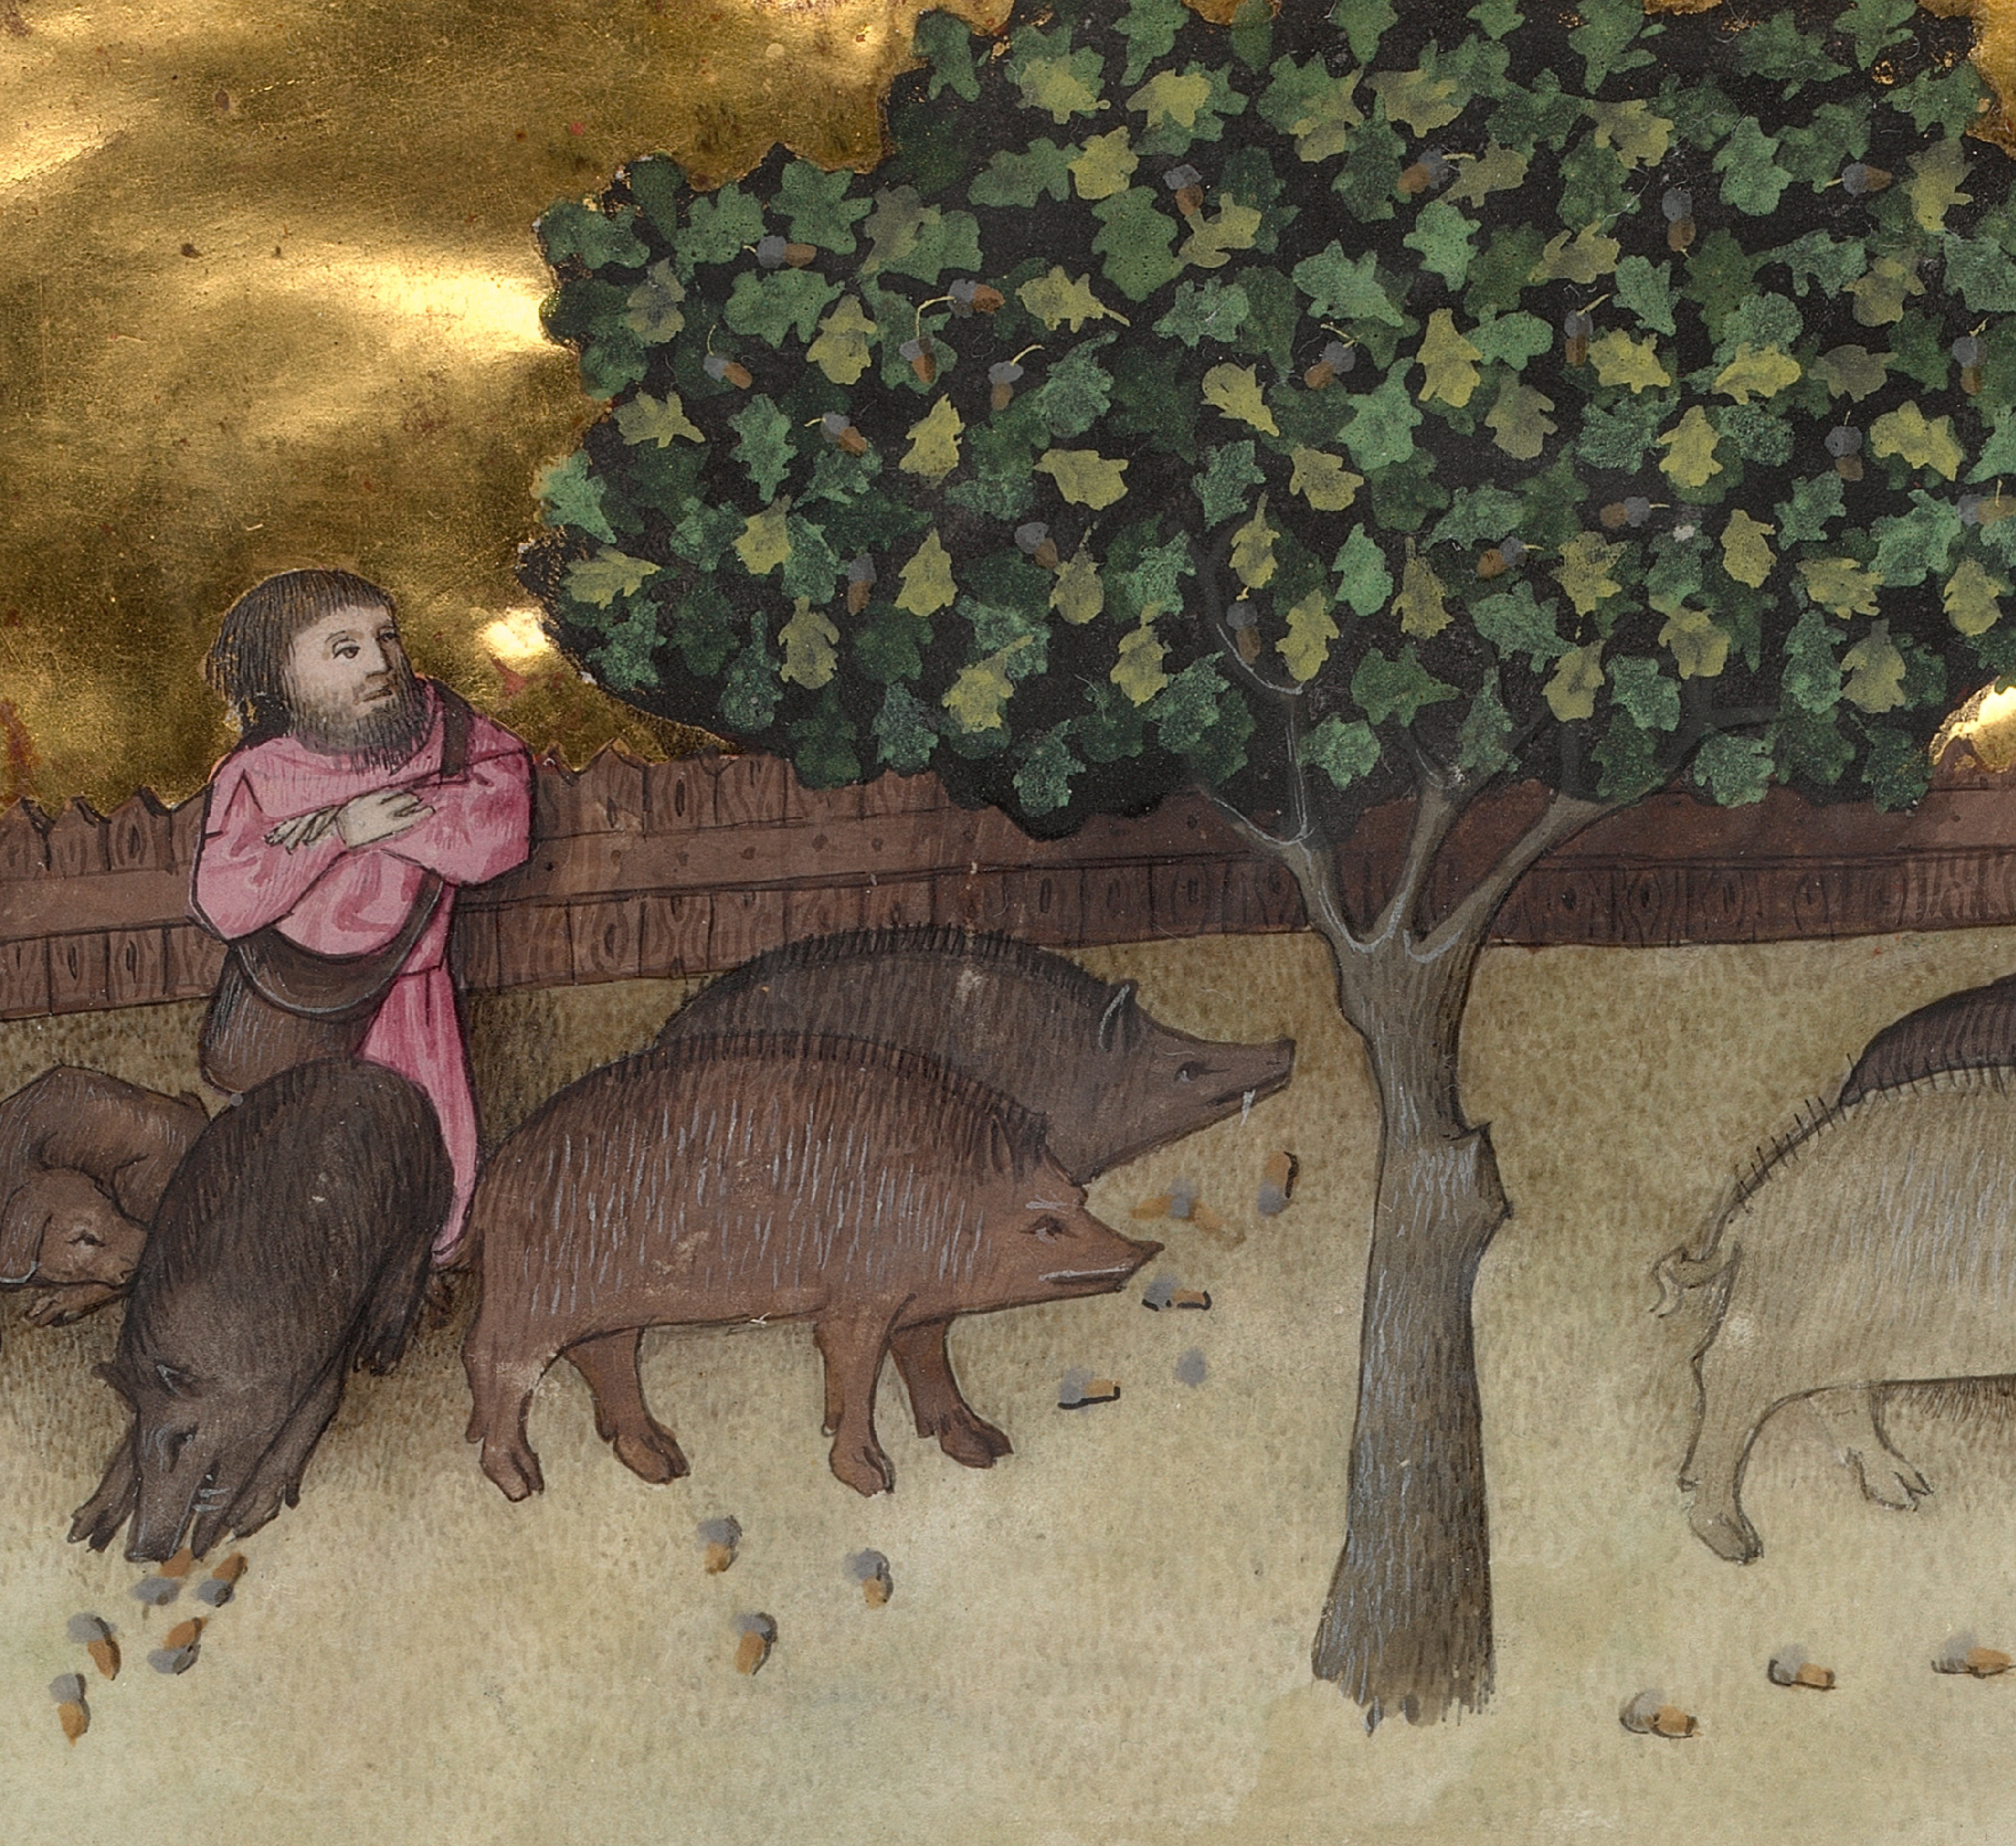 Pintura que representa un ganadero de la edad media alimentando a una piara de cerdos